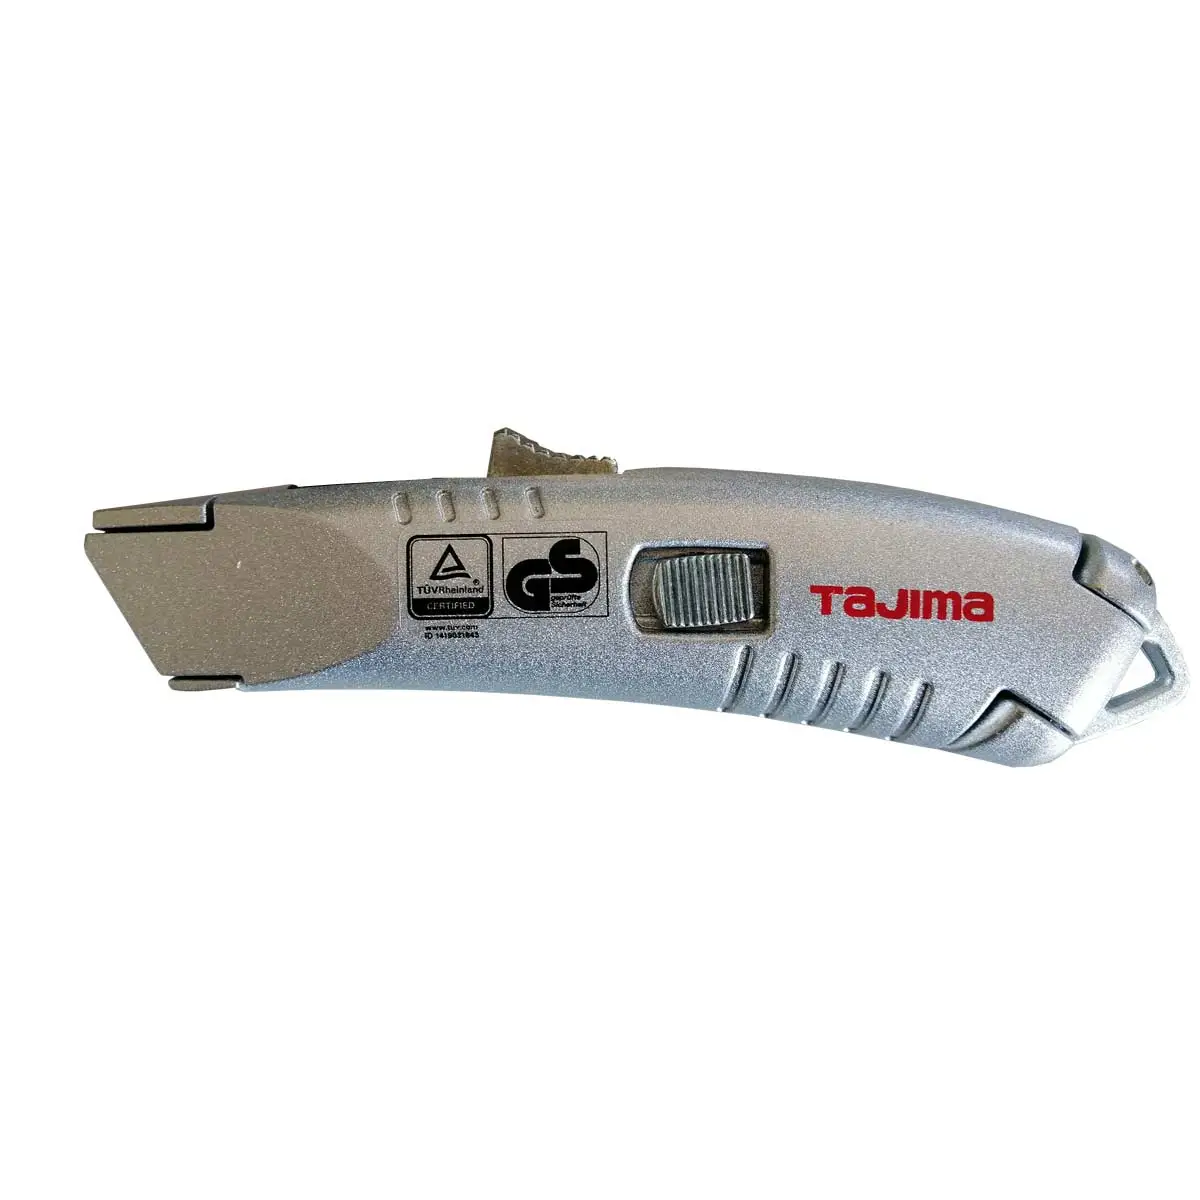 Sicherheitsmesser Cuttermesser Tajima VR103